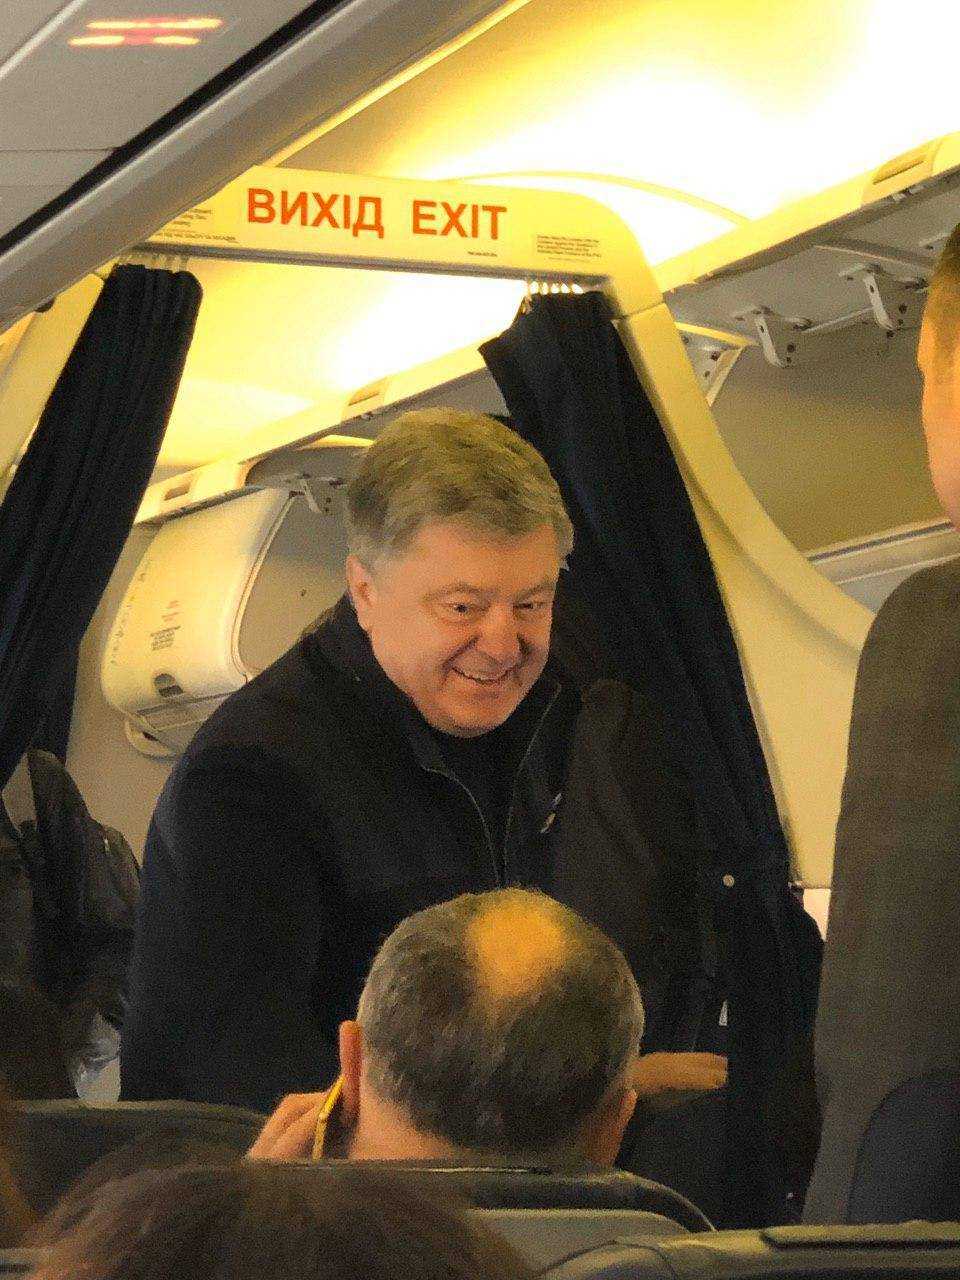 Появились фото из самолета в Мюнхен: полно "слуг", Порошенко и друг Путина